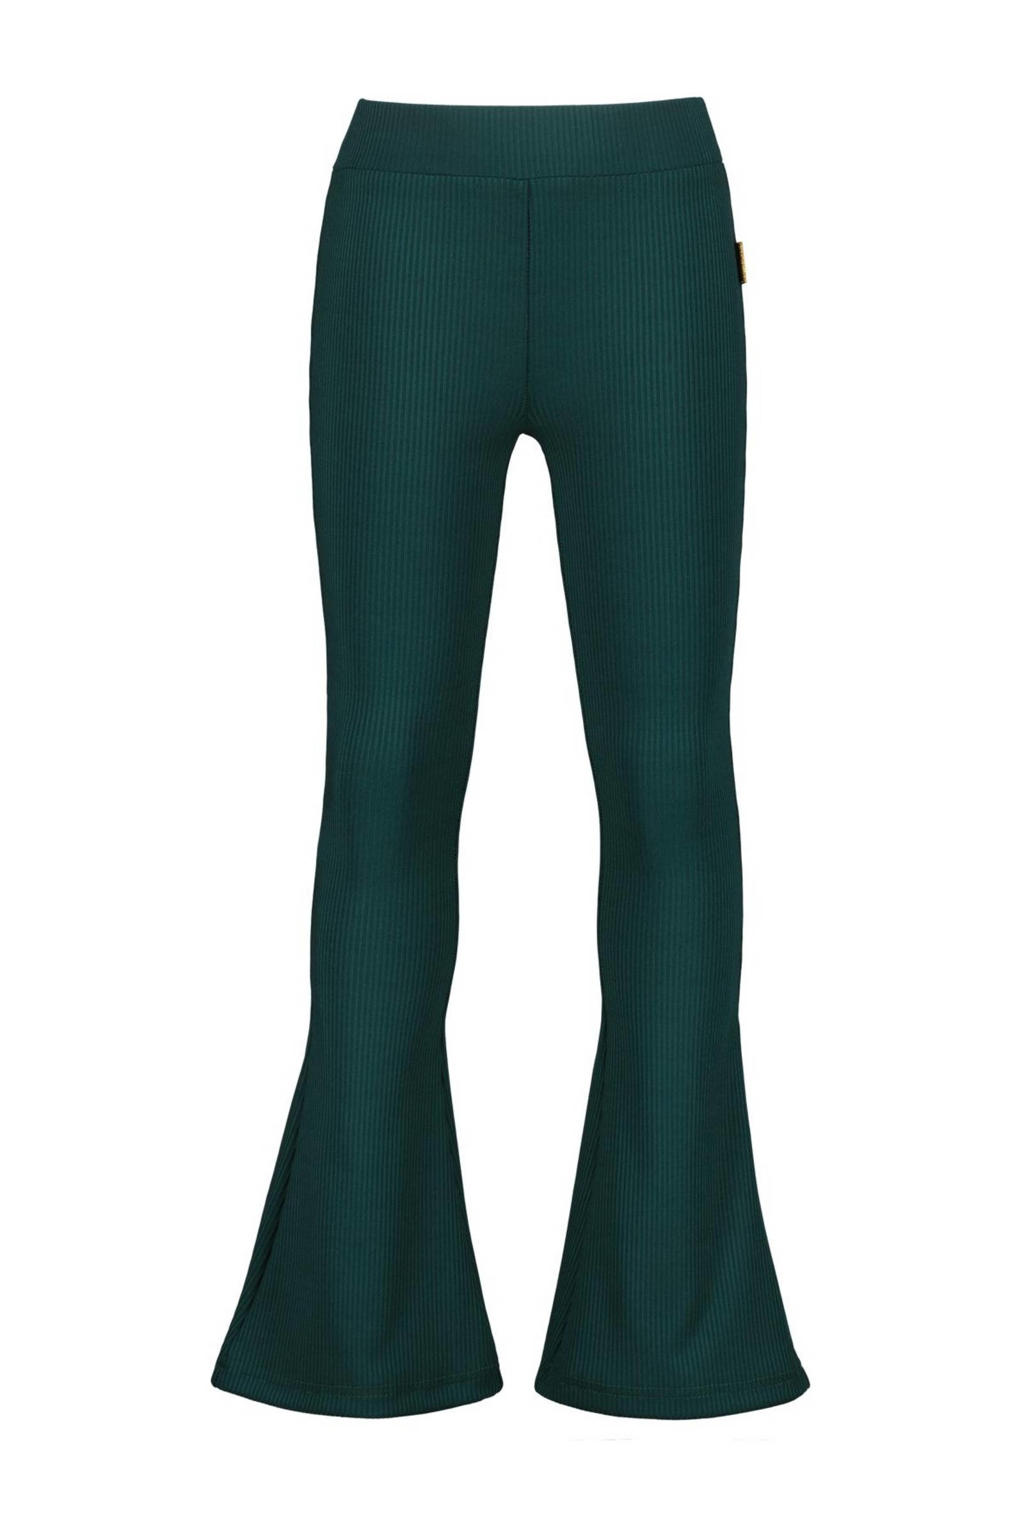 Donkergroene meisjes Vingino gestreepte flared broek van polyester met regular waist en elastische tailleband